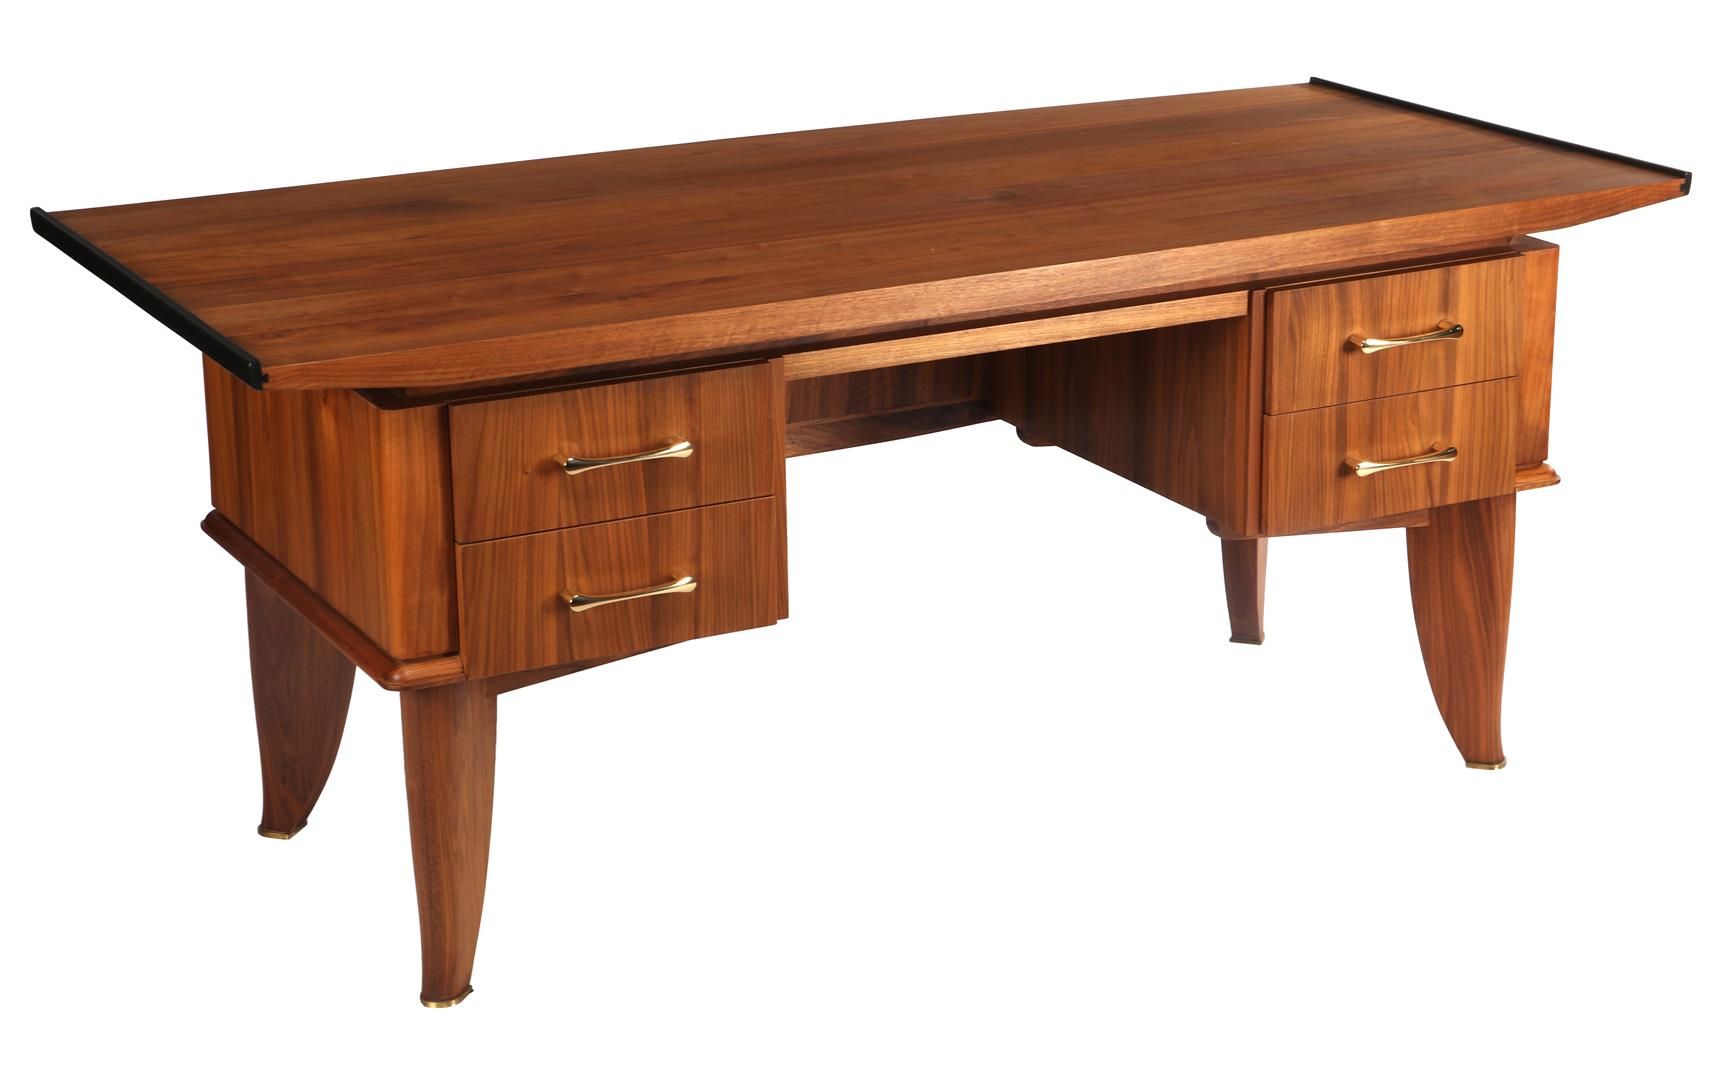 Null 柚木单板四抽屉书桌，浮动式桌面，熏黑装饰和黄铜把手，21 世纪，高 76.5 厘米，桌面尺寸为 181.5x84.5 厘米